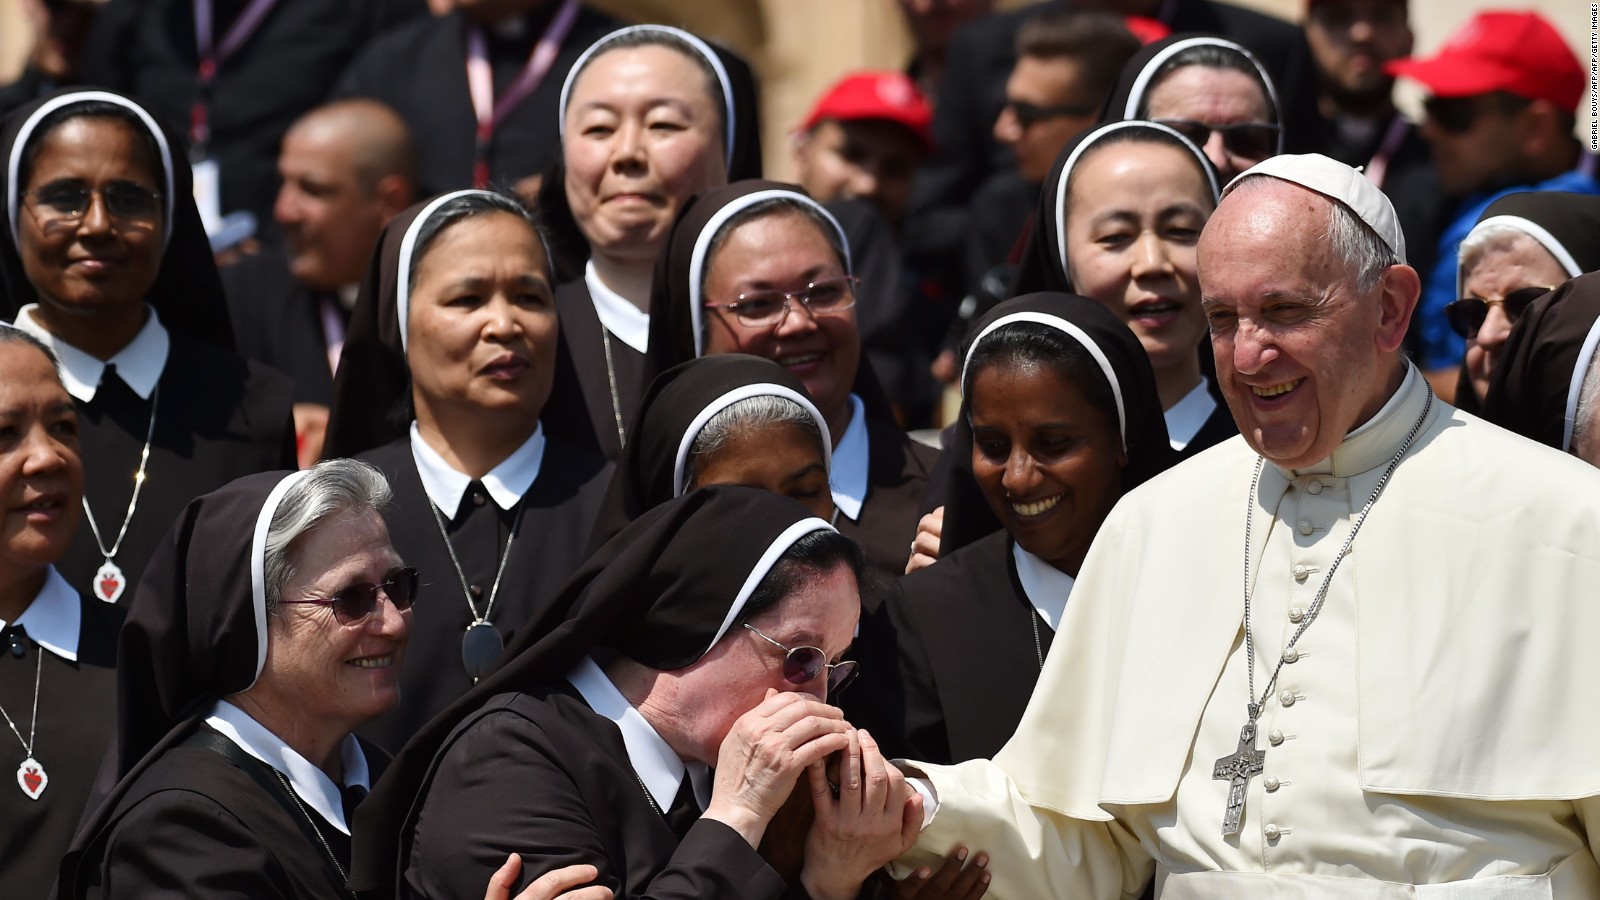 Las diaconisas intrigan al papa Francisco, ¿habrá mujeres en el sacerdocio?  | Video | CNN